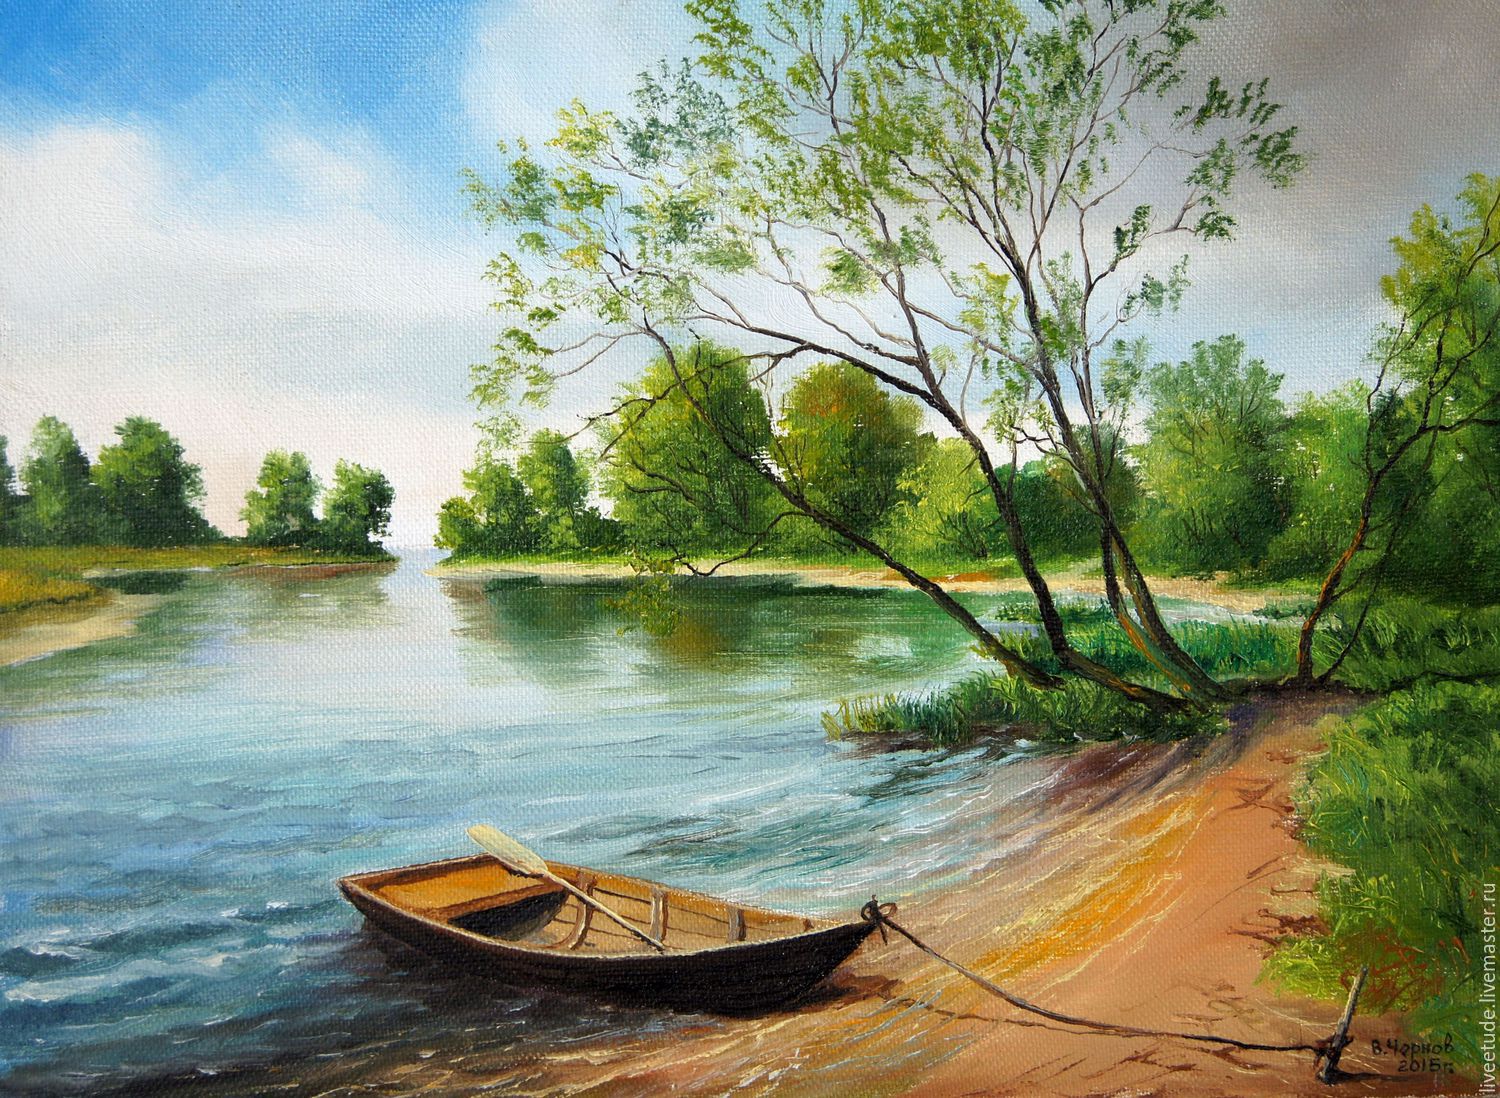 Рисунок показывающий красоту реки озера или моря. Картина "Речной пейзаж", 1900г. Пейзаж с речкой. Пейзаж рисунок.